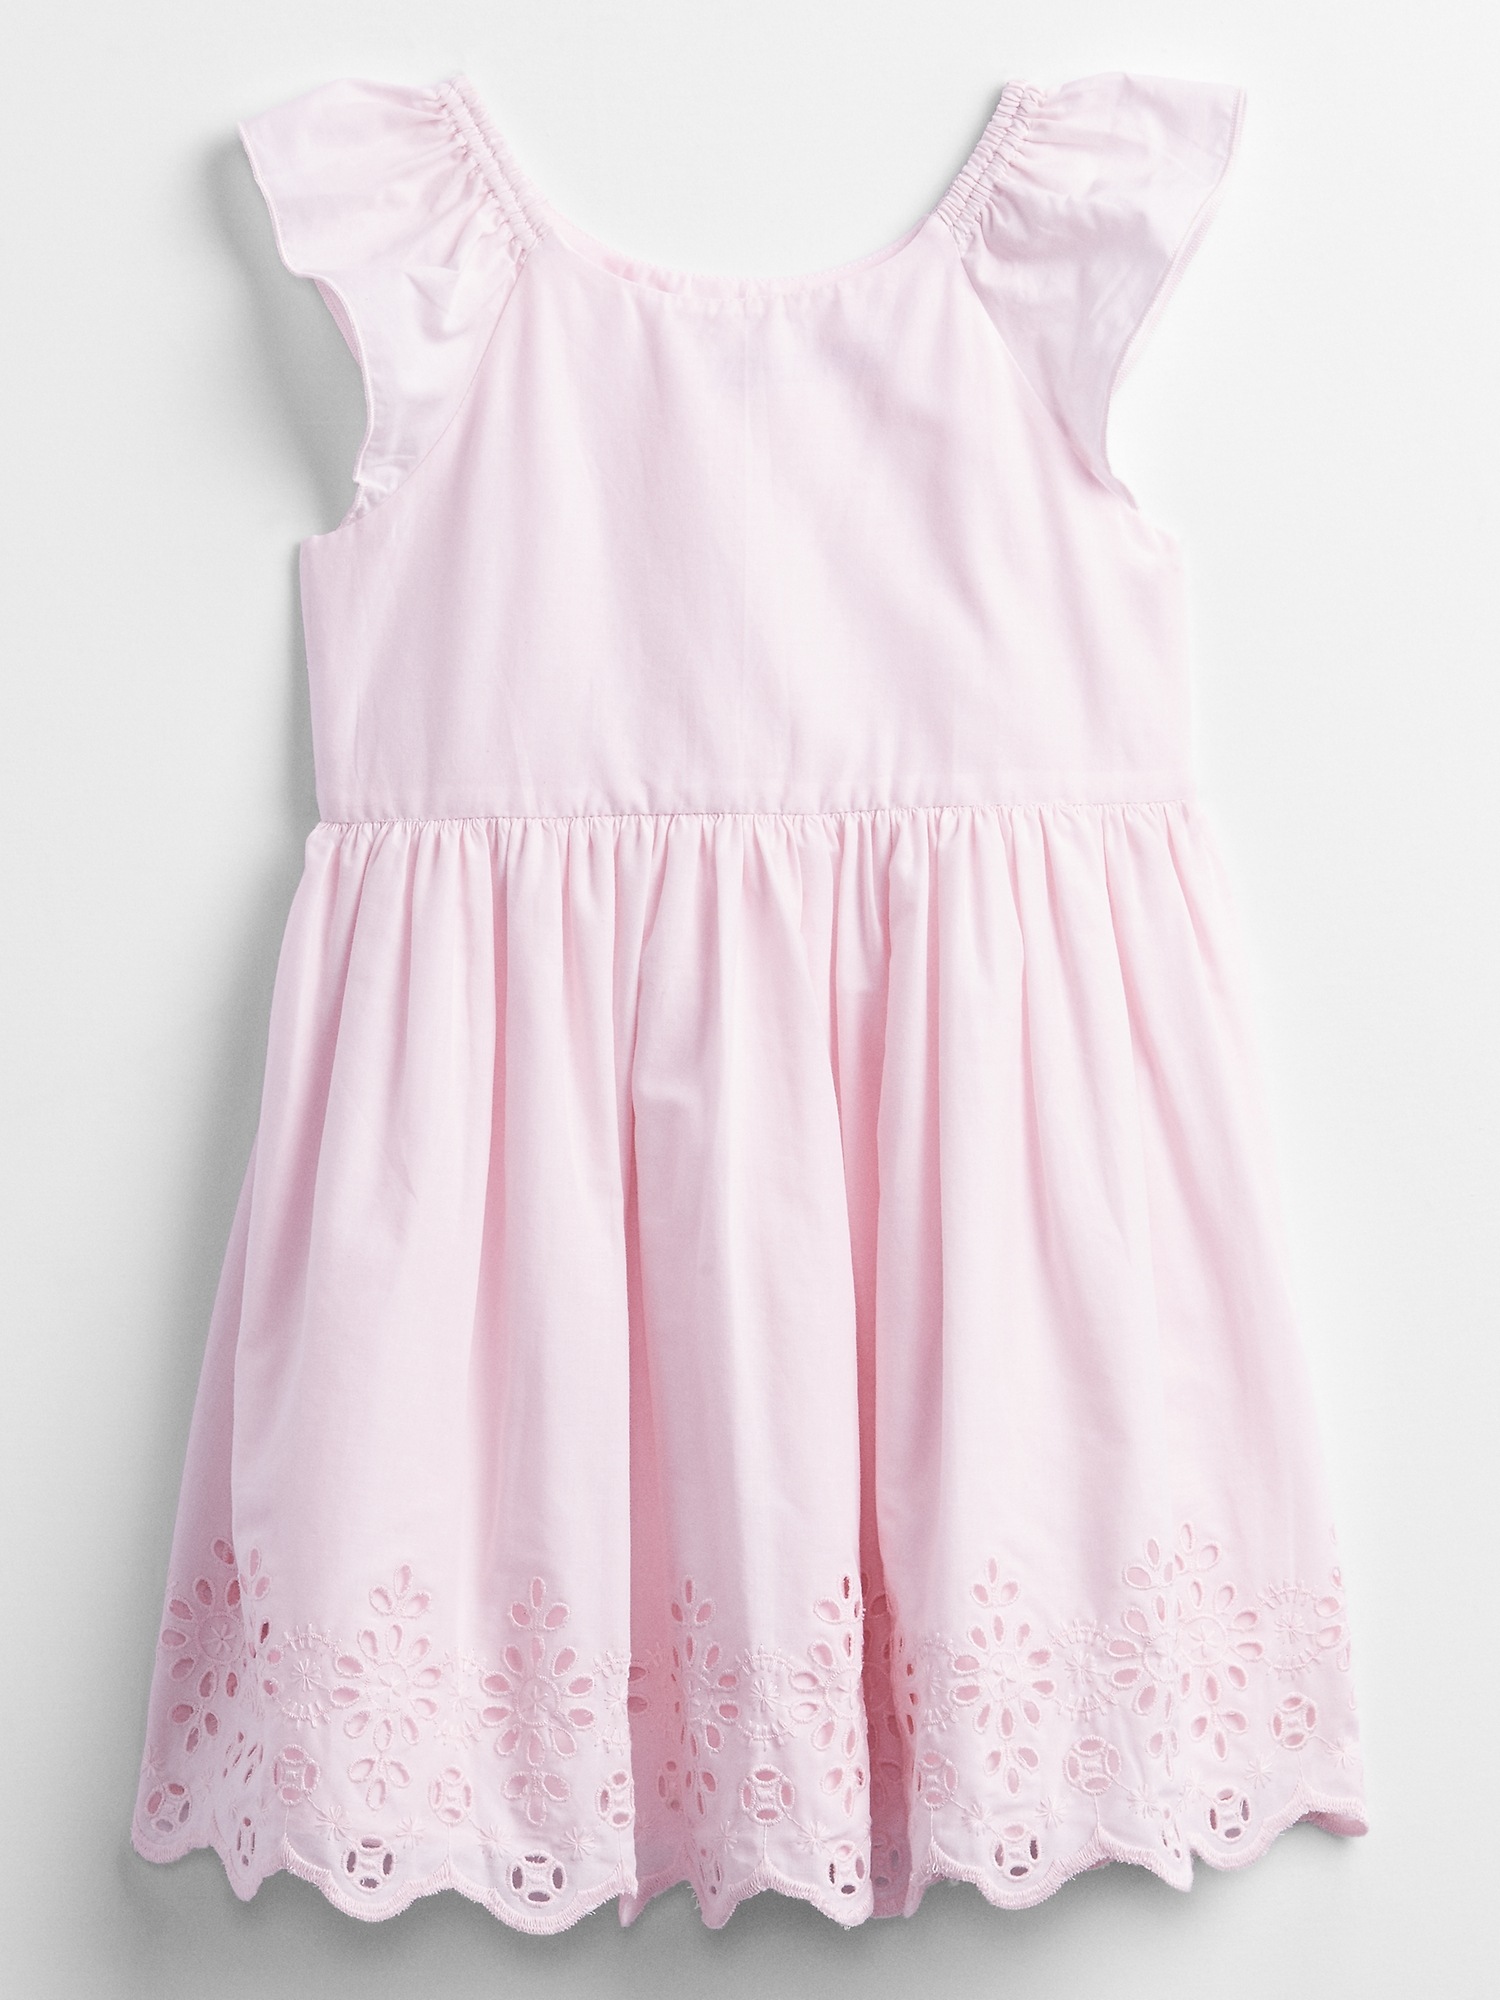 Toddler Eyelet Dress | Gap Factory